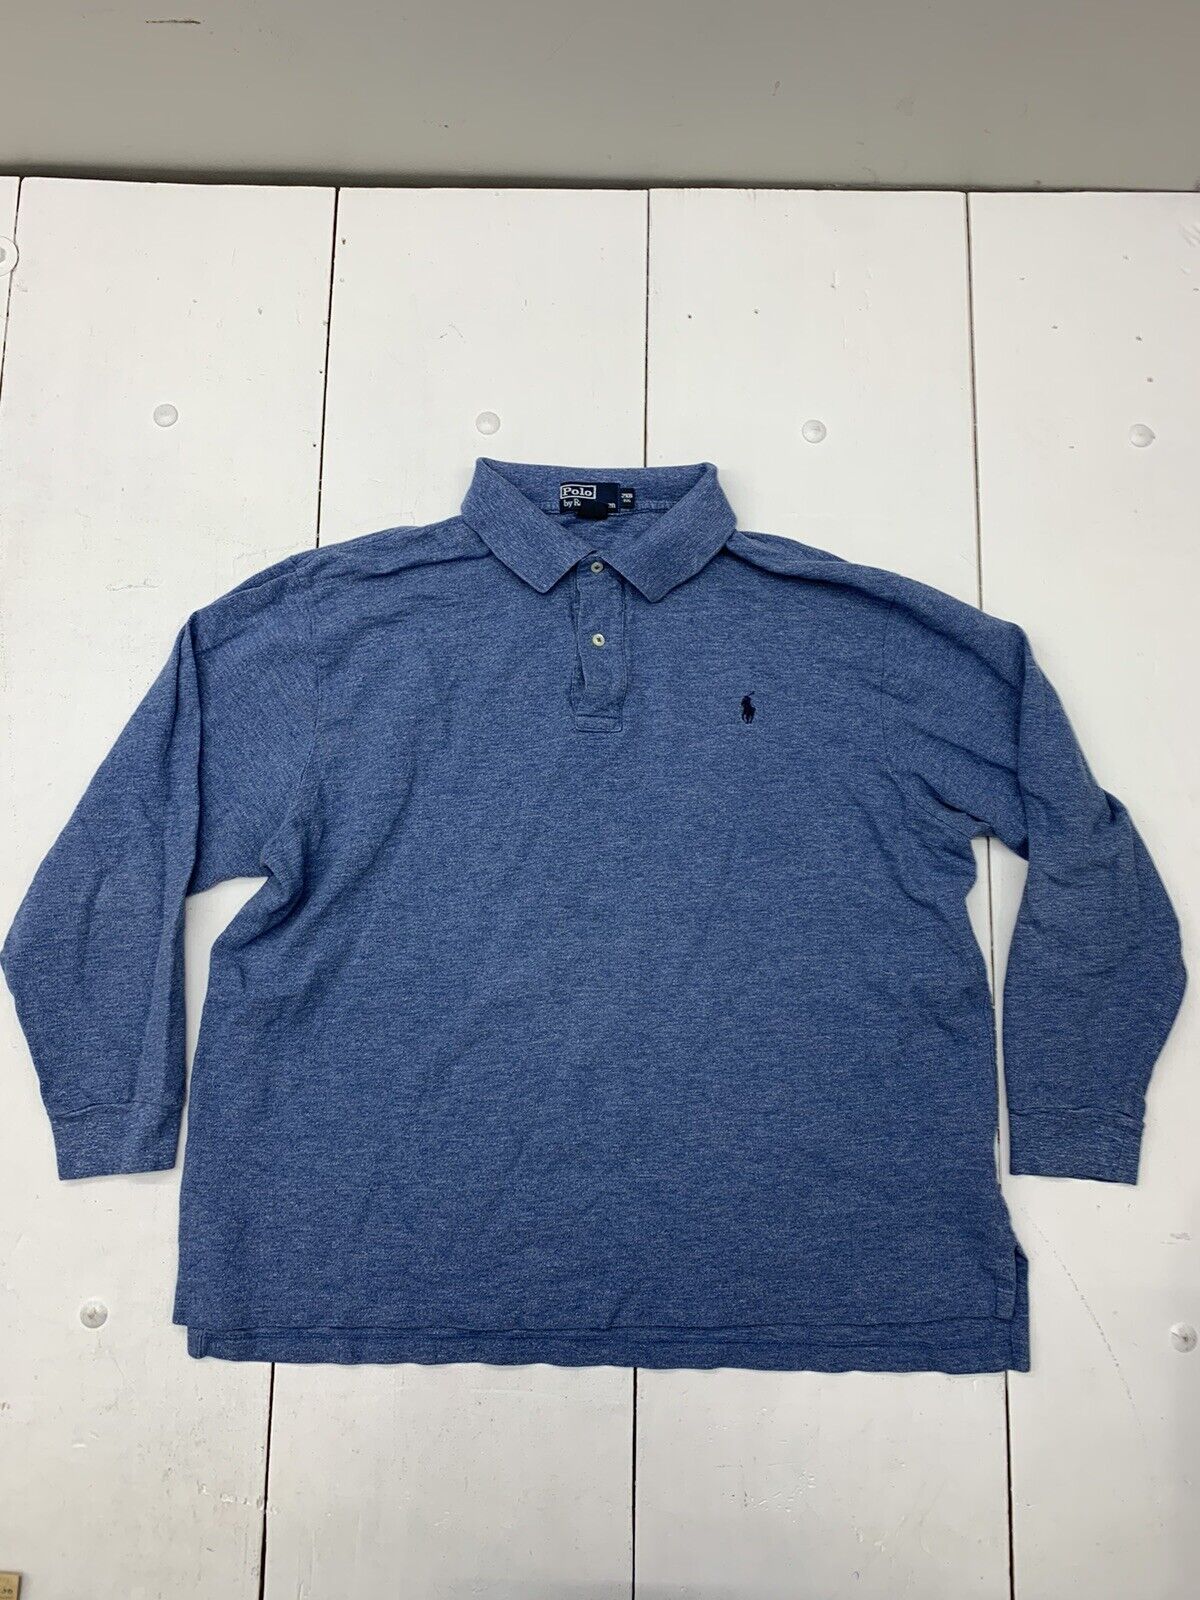 Polo Ralph Lauren Mens Long Sleeve Blue Shirt Size 2XB